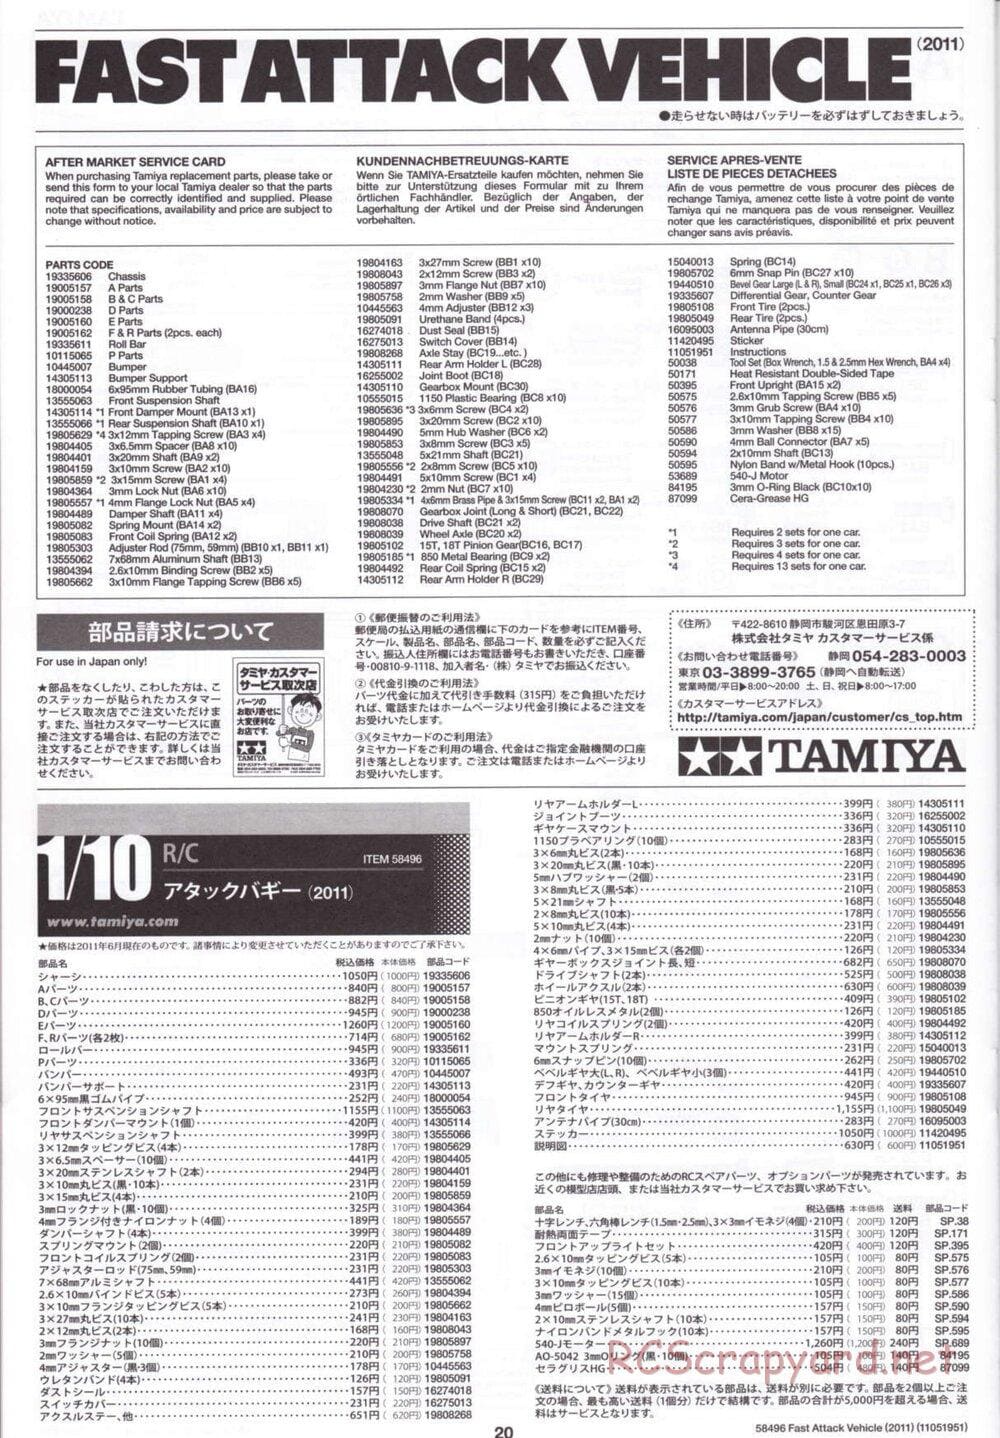 Tamiya - Fast Attack Vehicle 2011 - FAV Chassis - Manual - Page 20